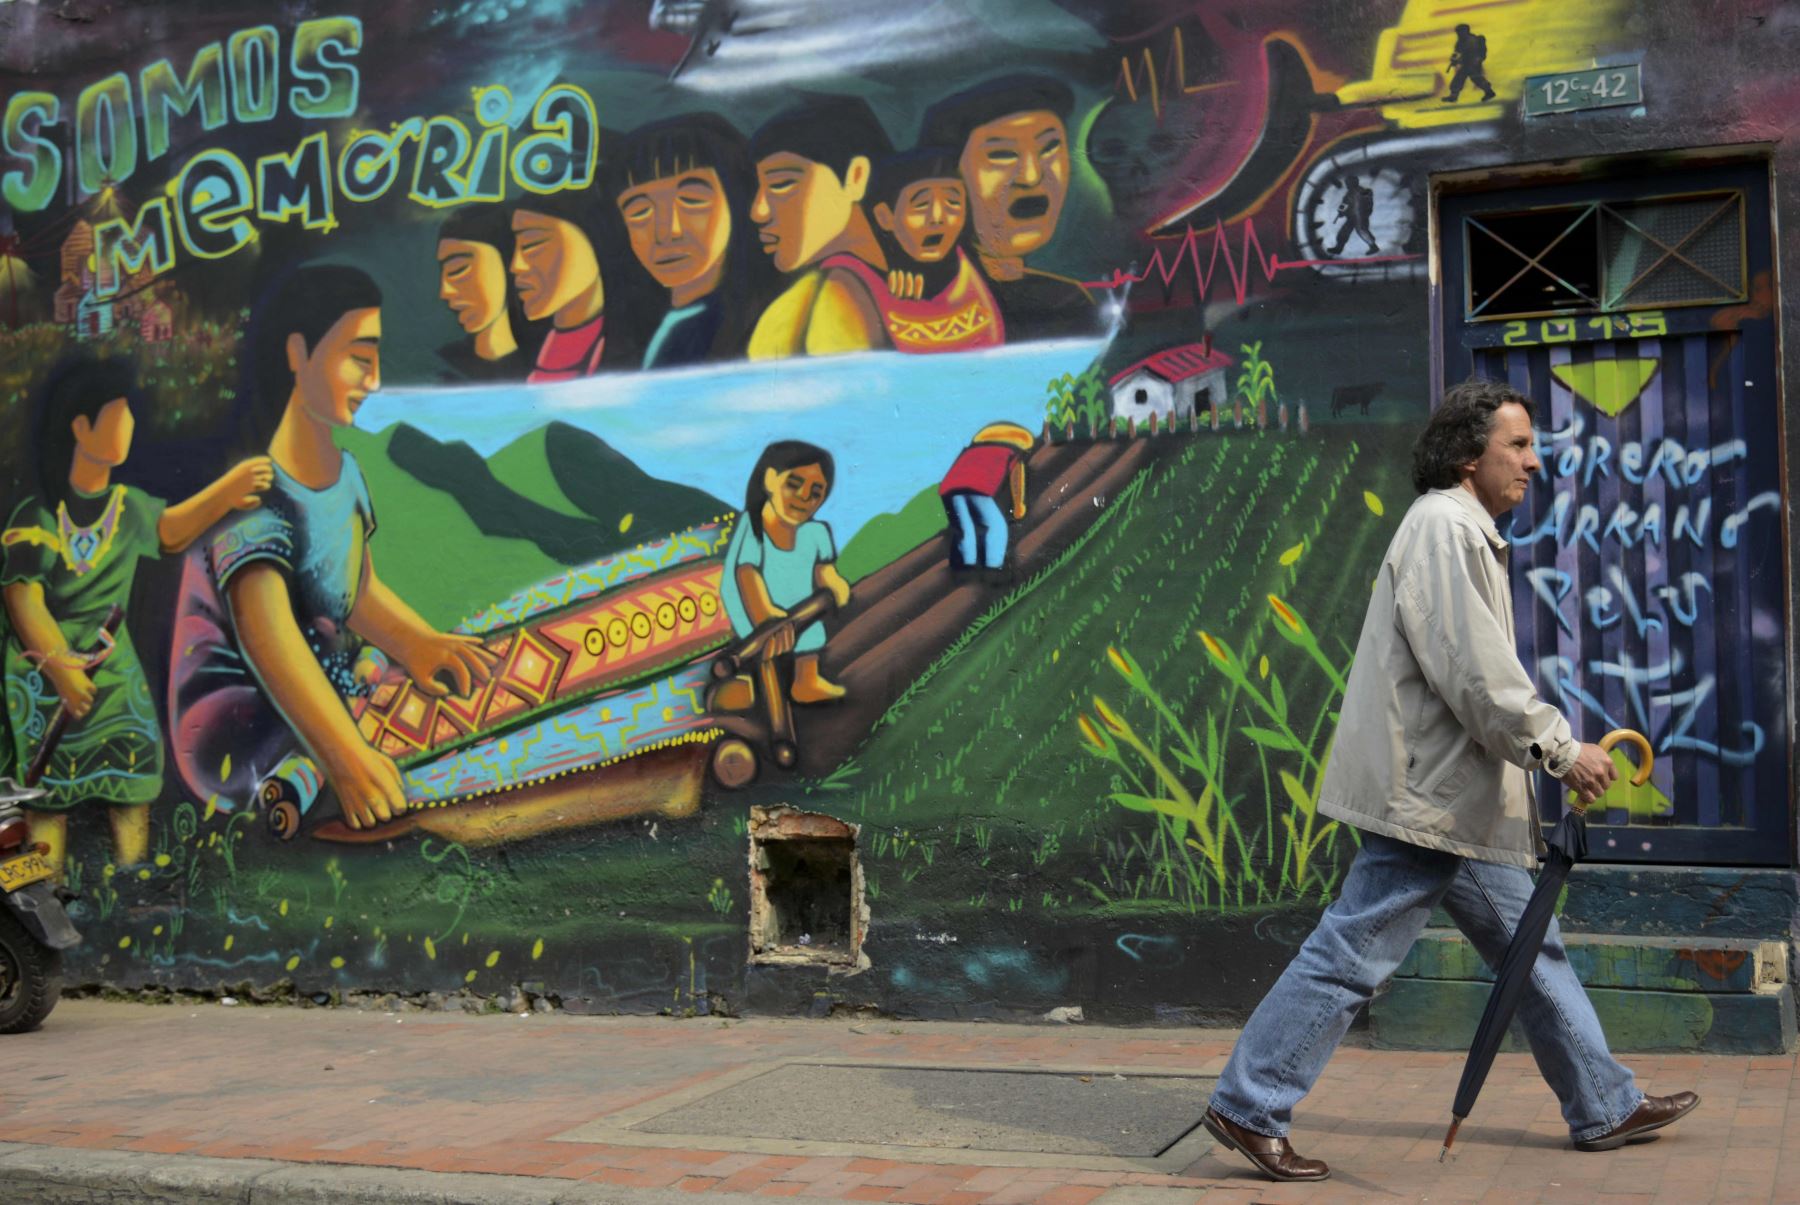 Una vez considerado el vandalismo, el graffiti está ganando más respeto en Colombia, lo que refleja el deseo de paz, mientras que el gobierno y la guerrilla de las FARC negocian fin al conflicto armado de medio siglo en el país. Foto: AFP